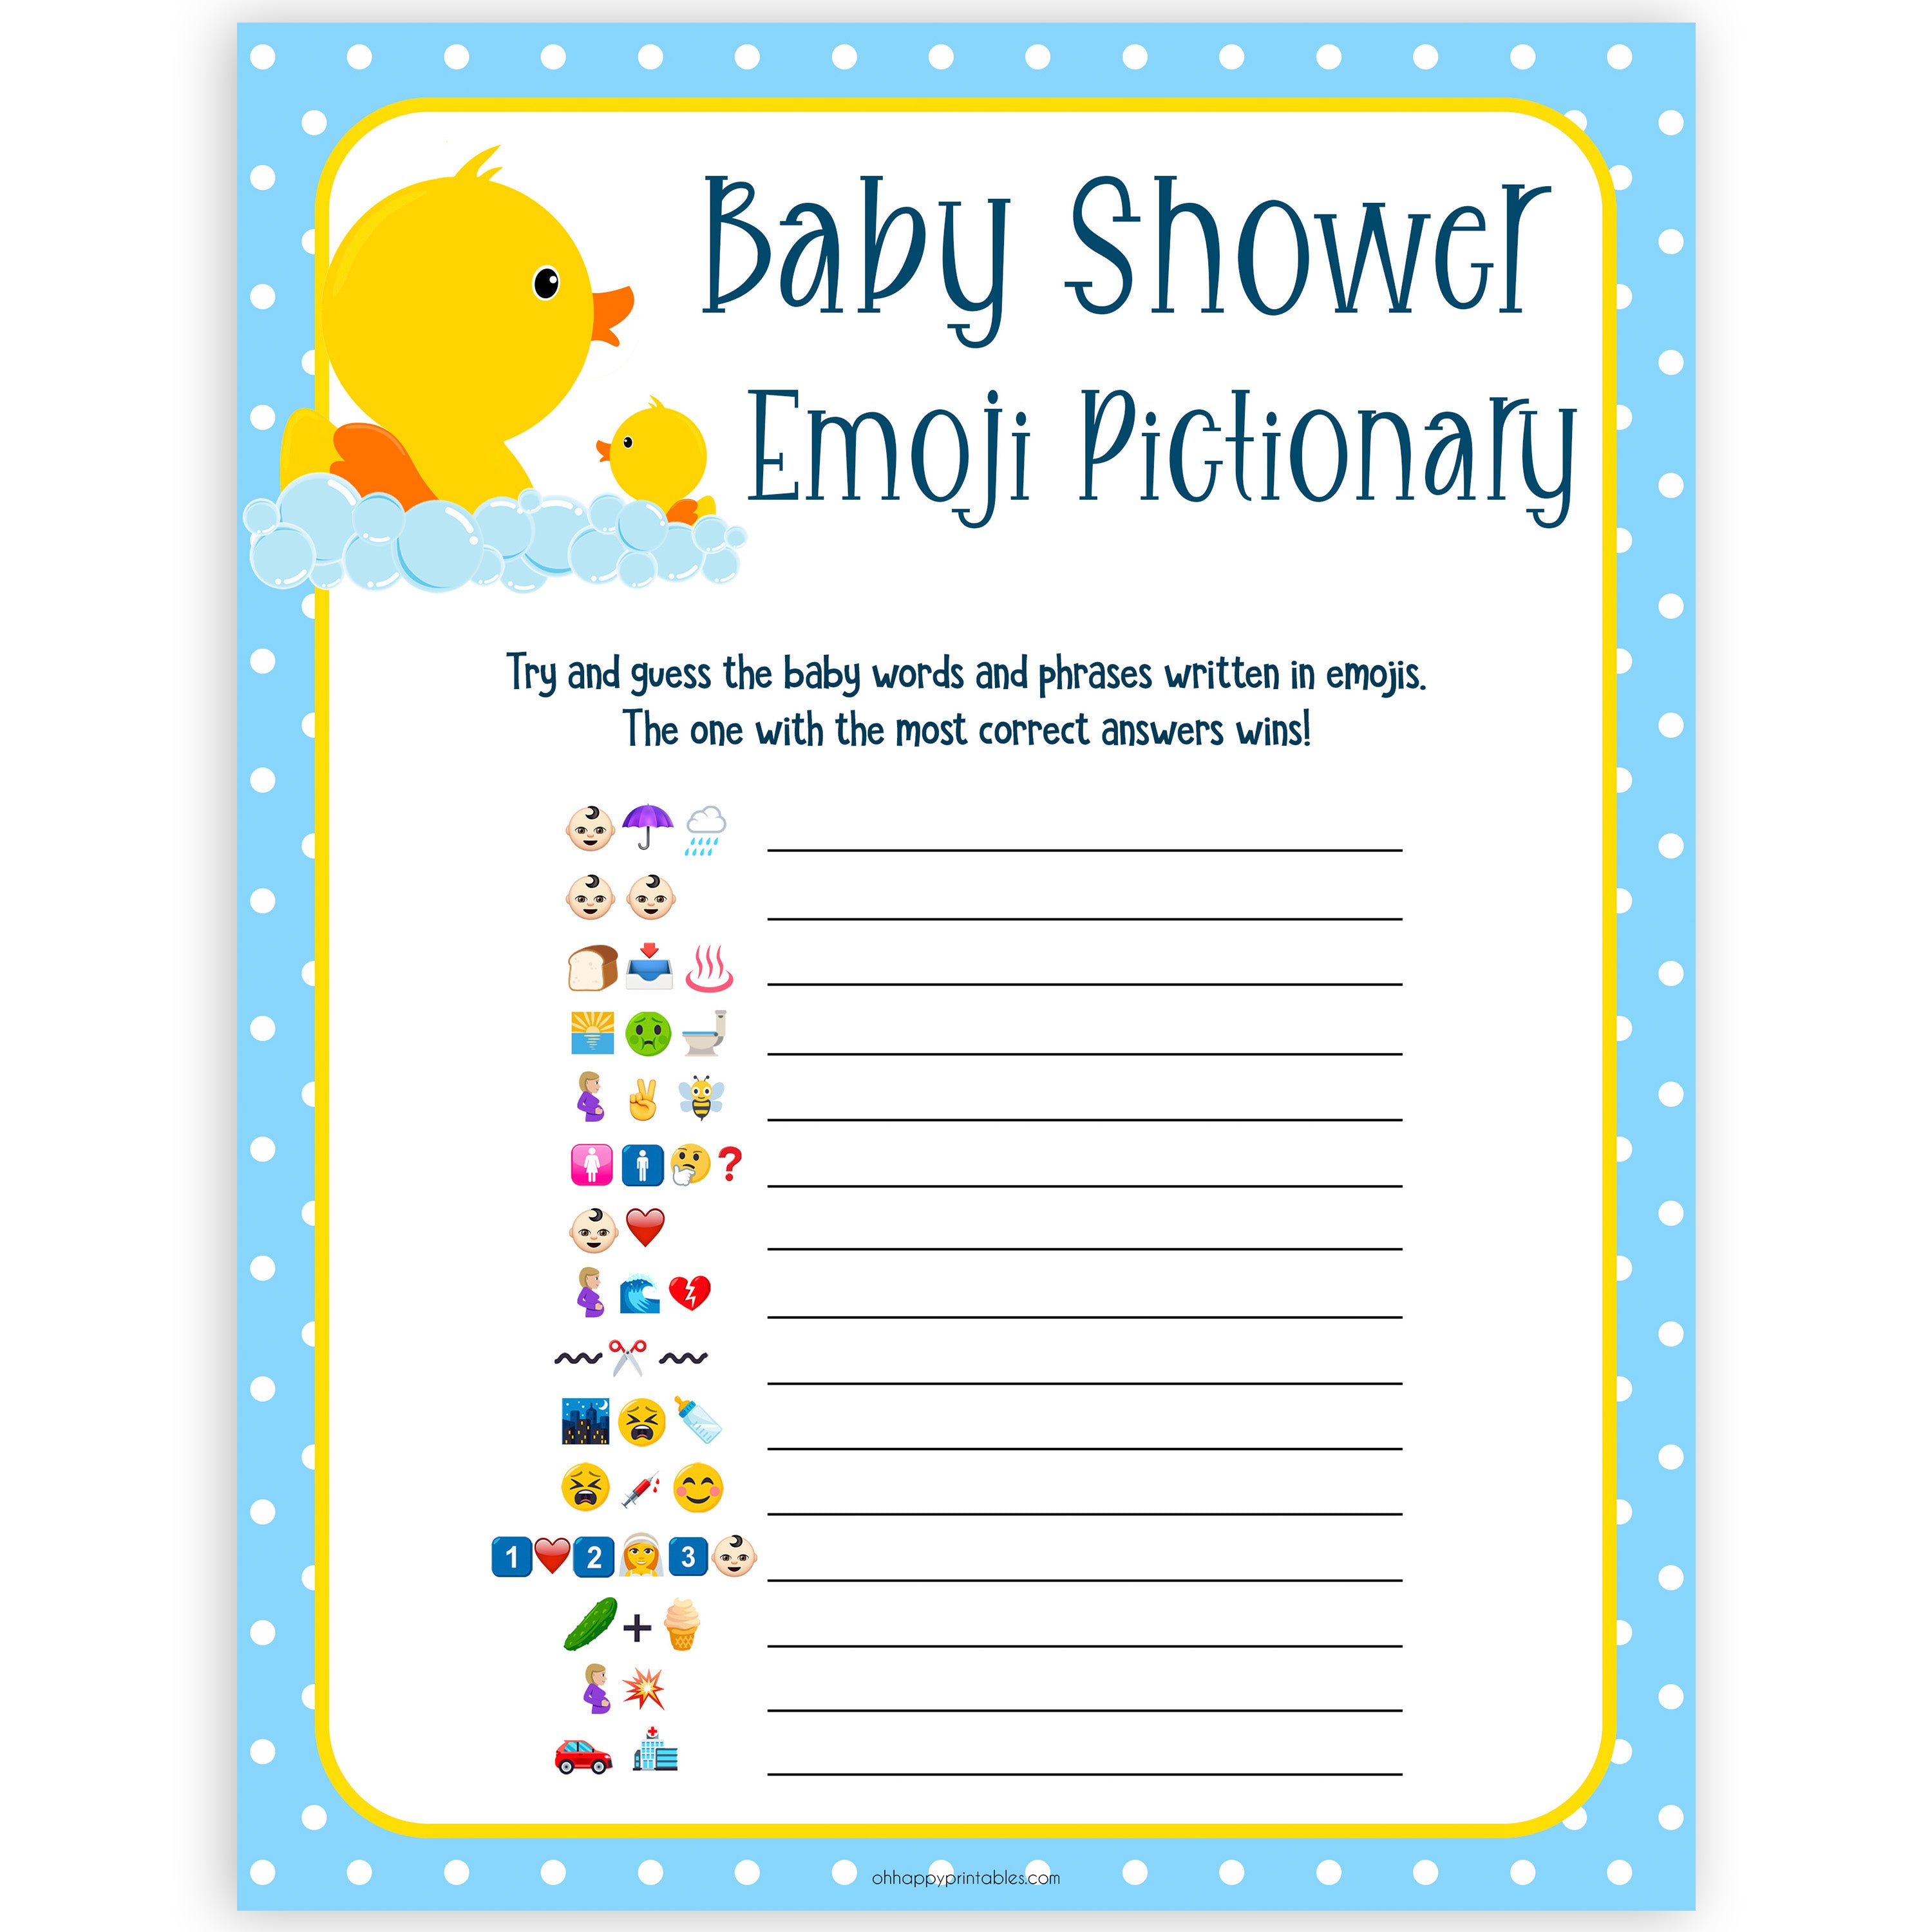 baby-emoji-pictionary-printable-rubber-ducky-baby-shower-games-lacienciadelcafe-ar